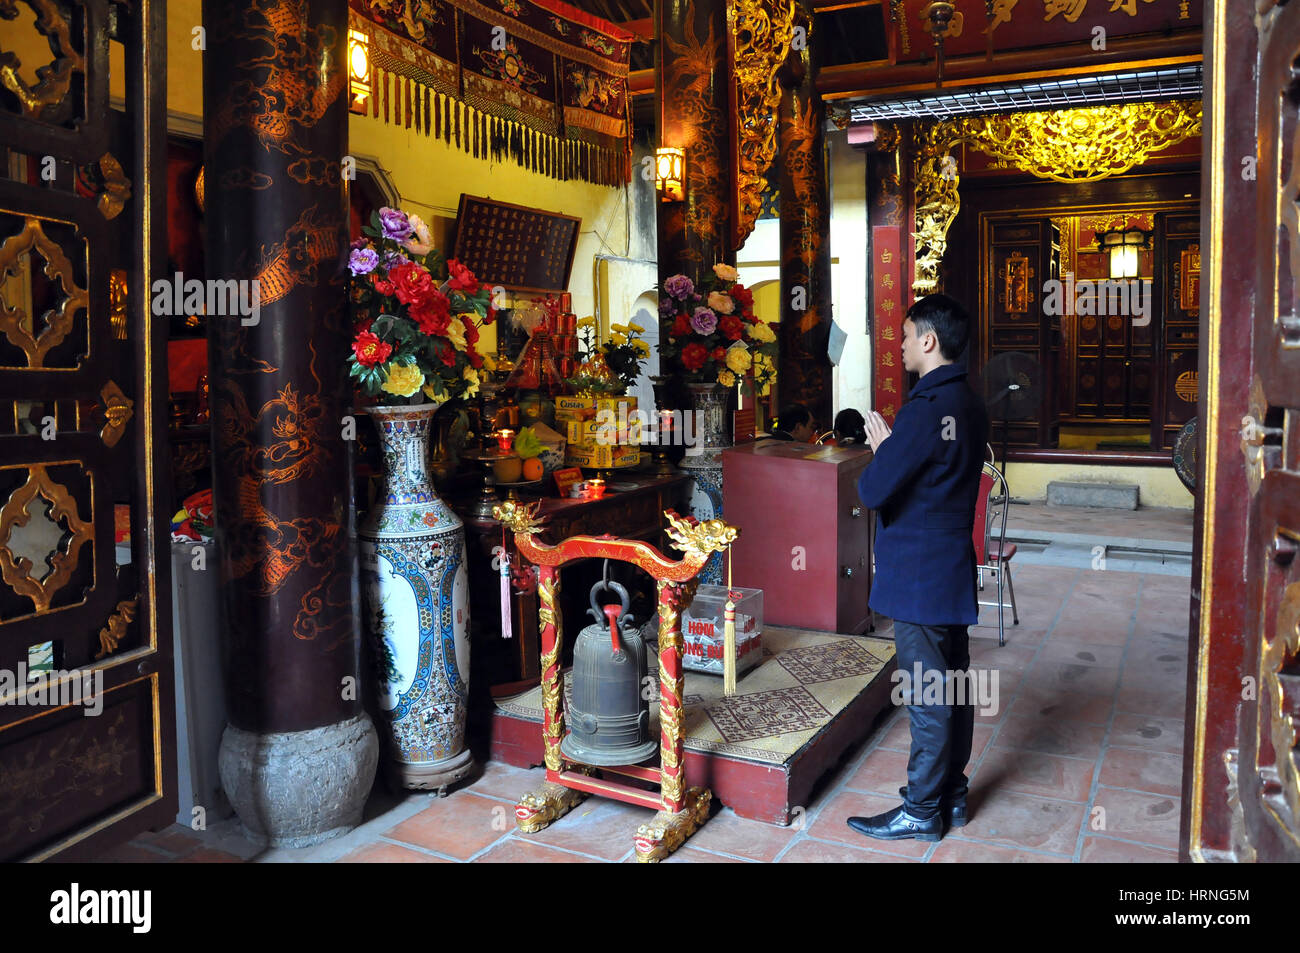 HANOI, VIETNAM - FEBRUARY 19, 2013: Buddhist worshippers praying in the interior of Bac Ma temple in Hanoi Vietnam Stock Photo